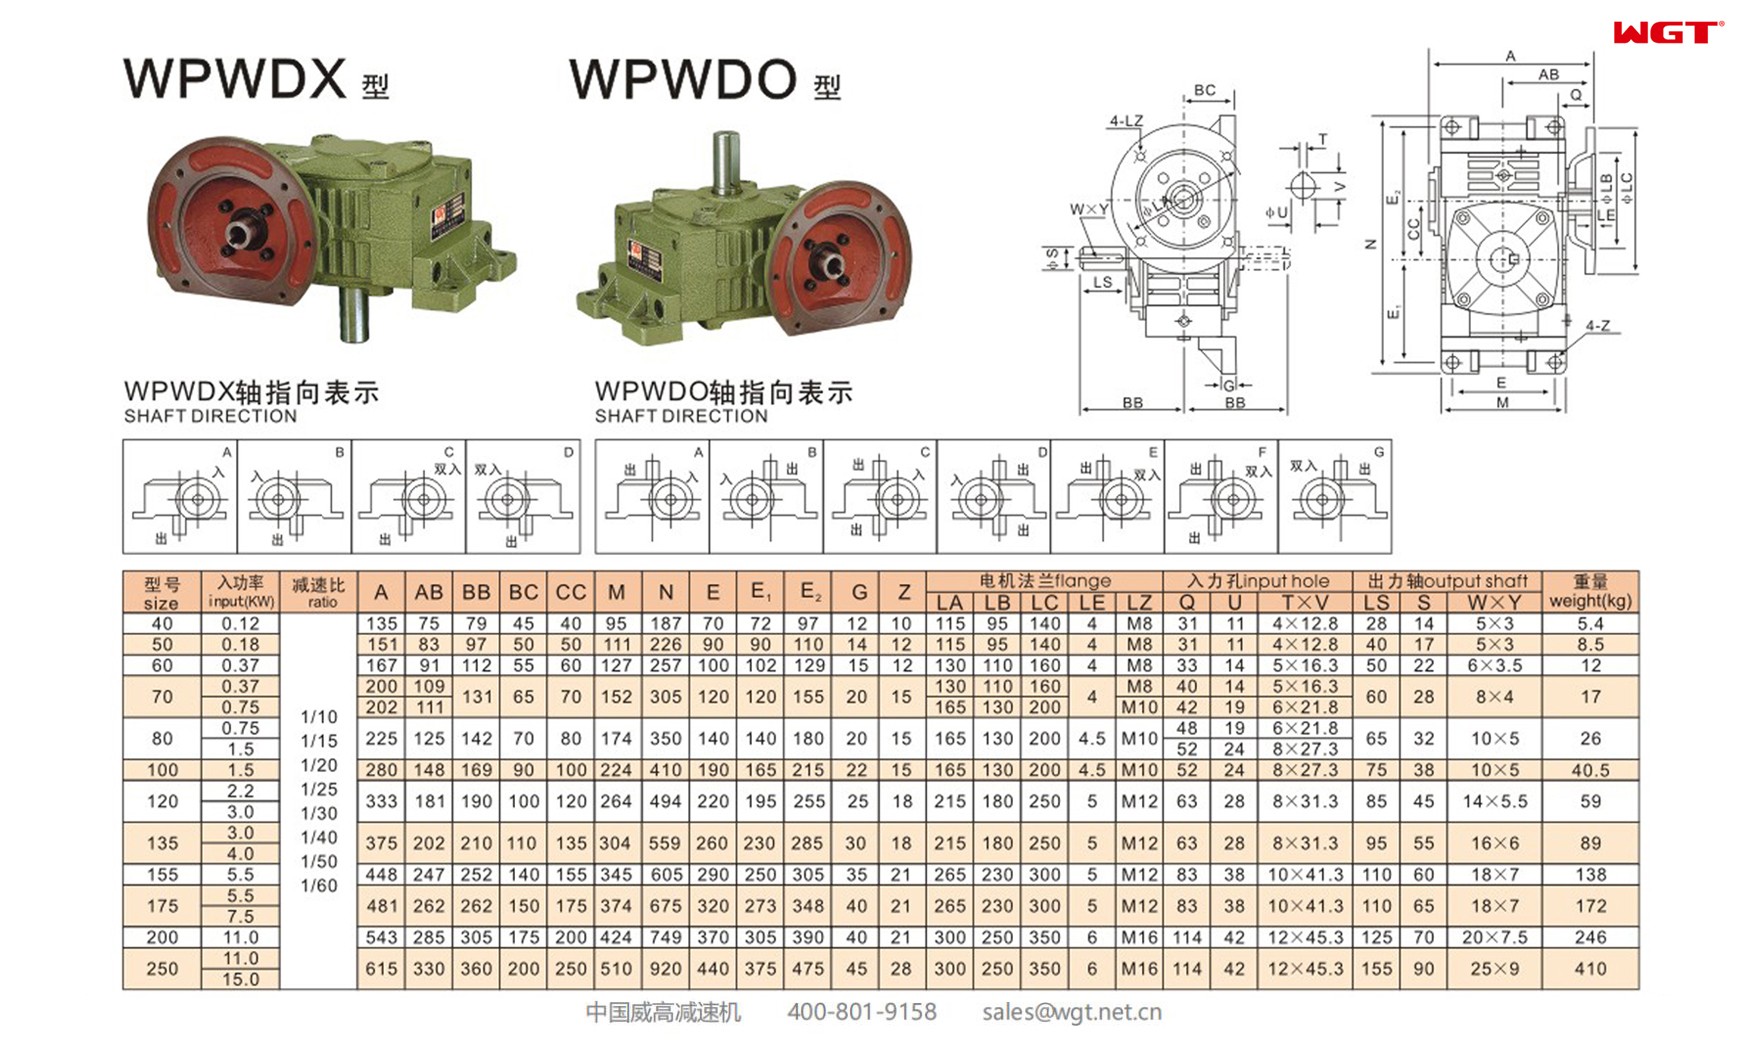 WPWDX60 worm gear reducer universal speed reducer 